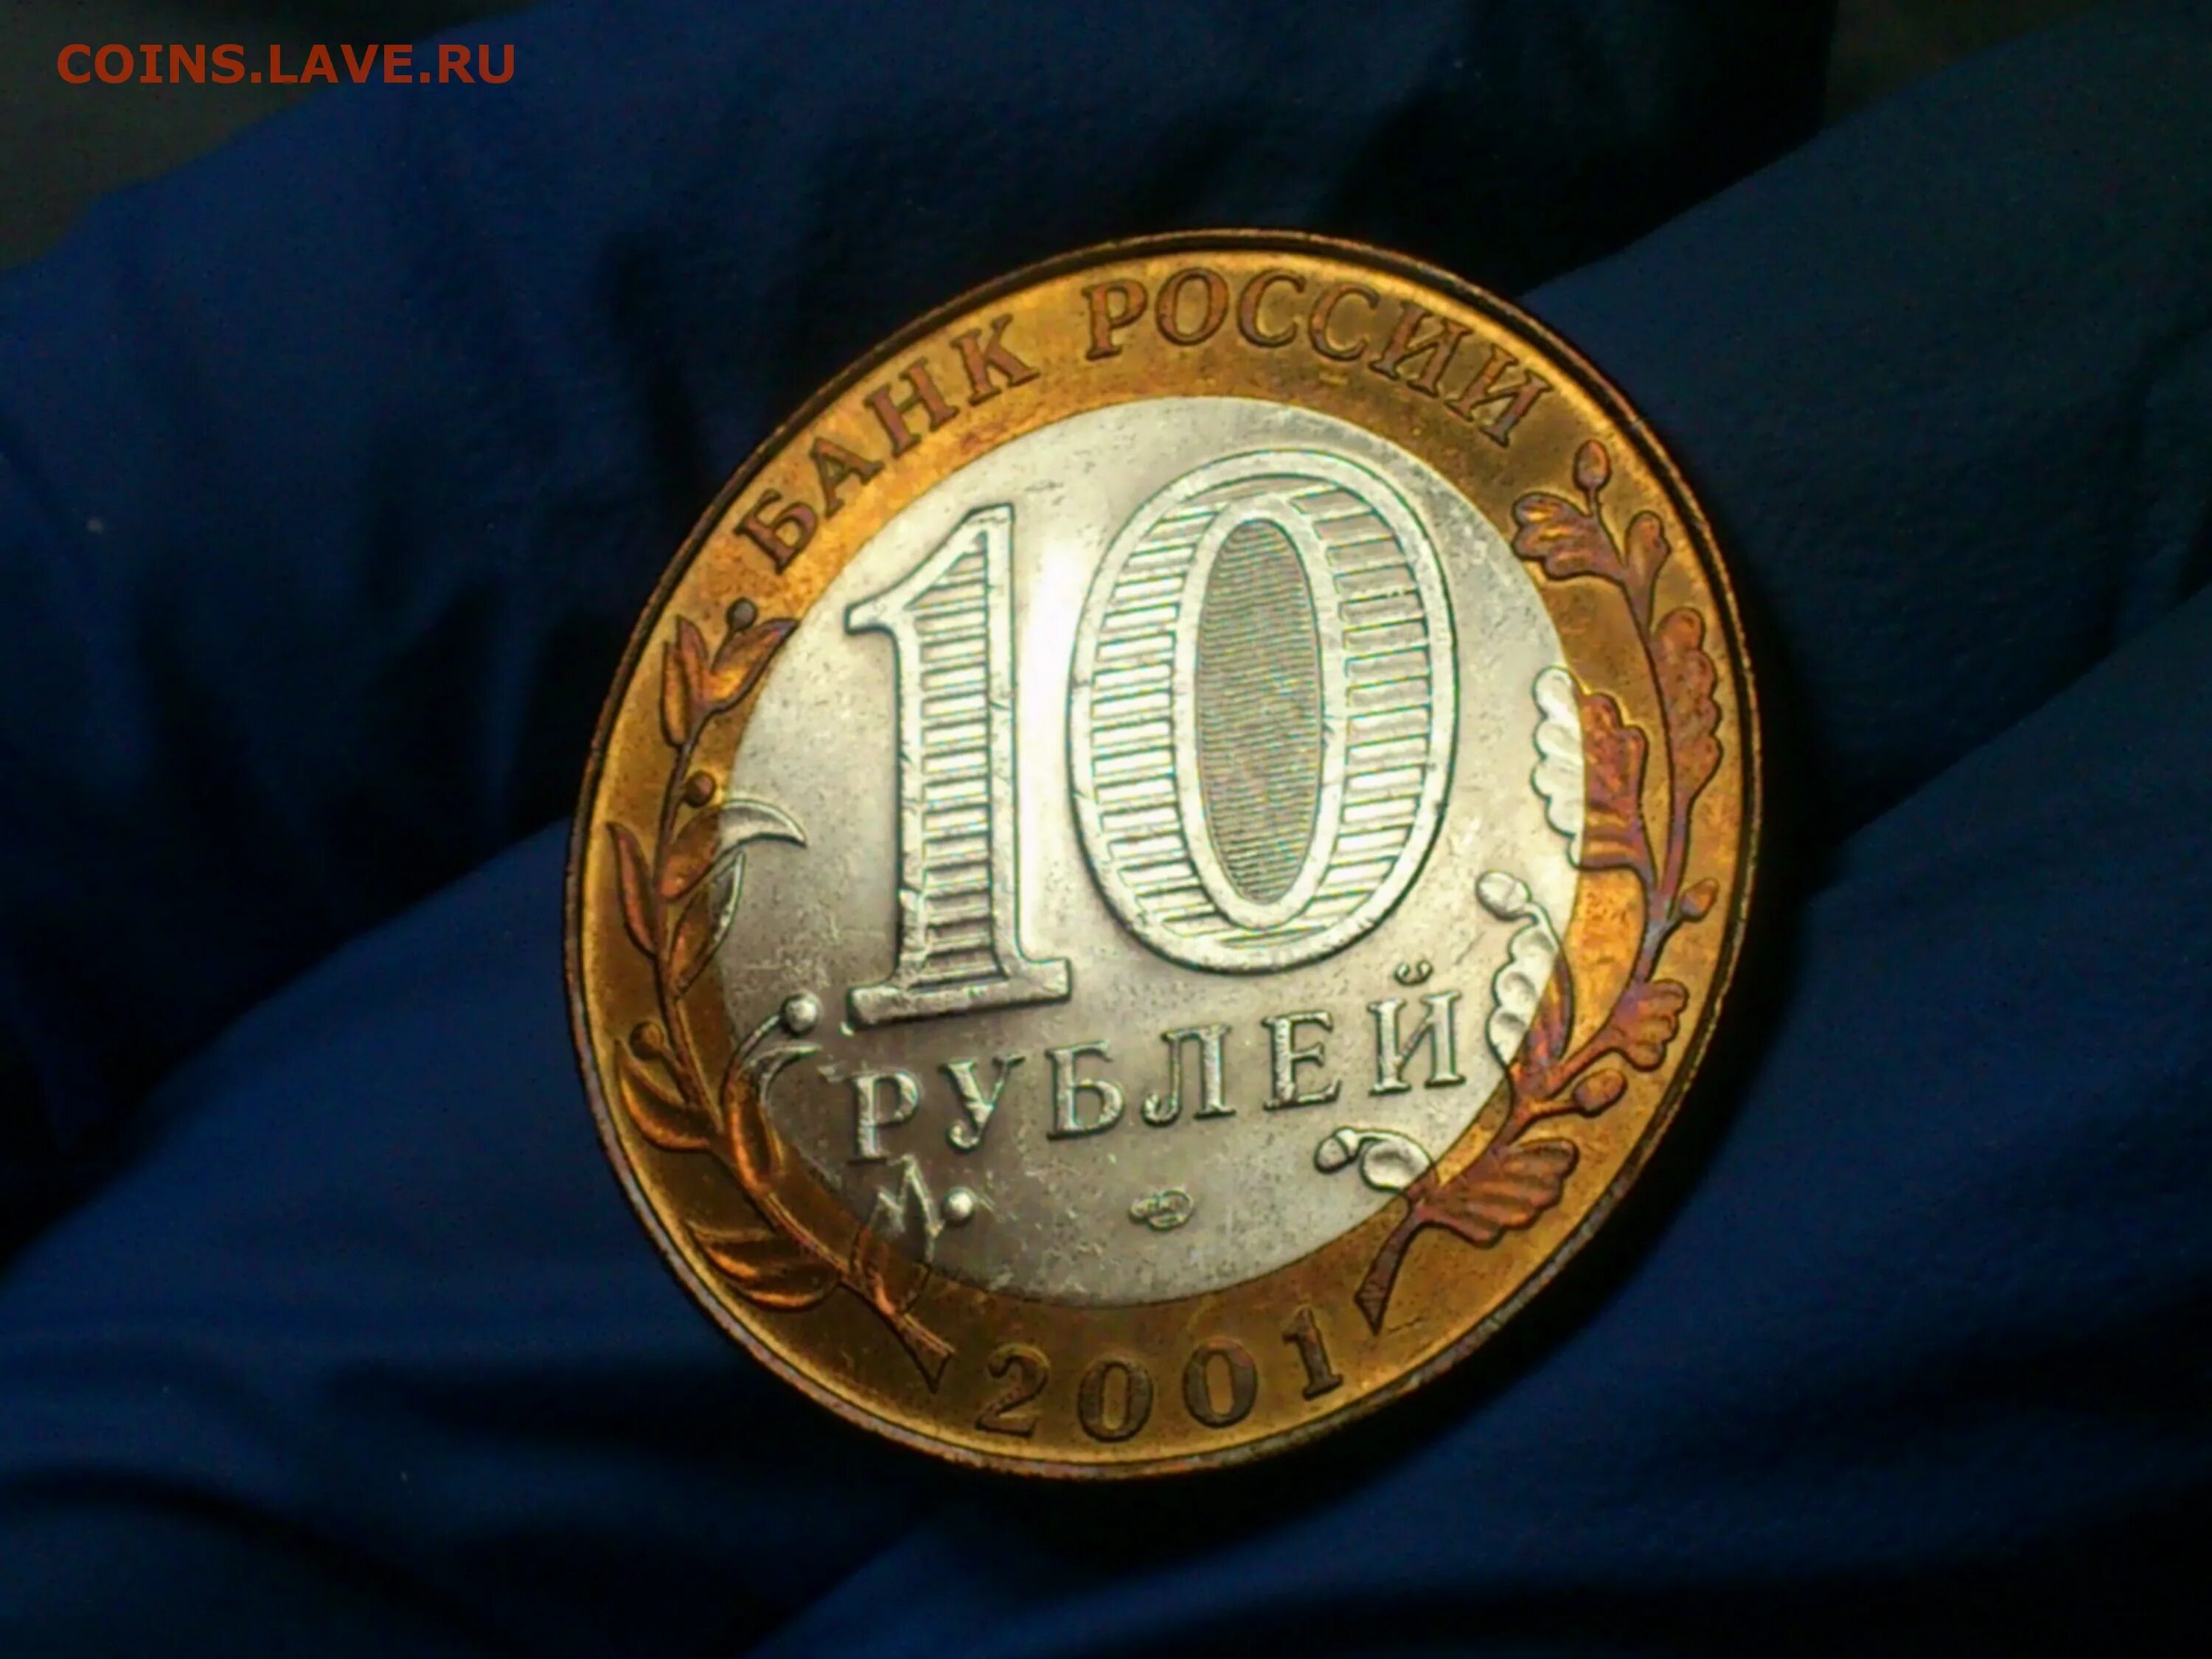 22 апр 10. Монеты 1 2 5 10 рублей. Все юбилейные 10 рублей. Монета 10 рублей Грозный цена.